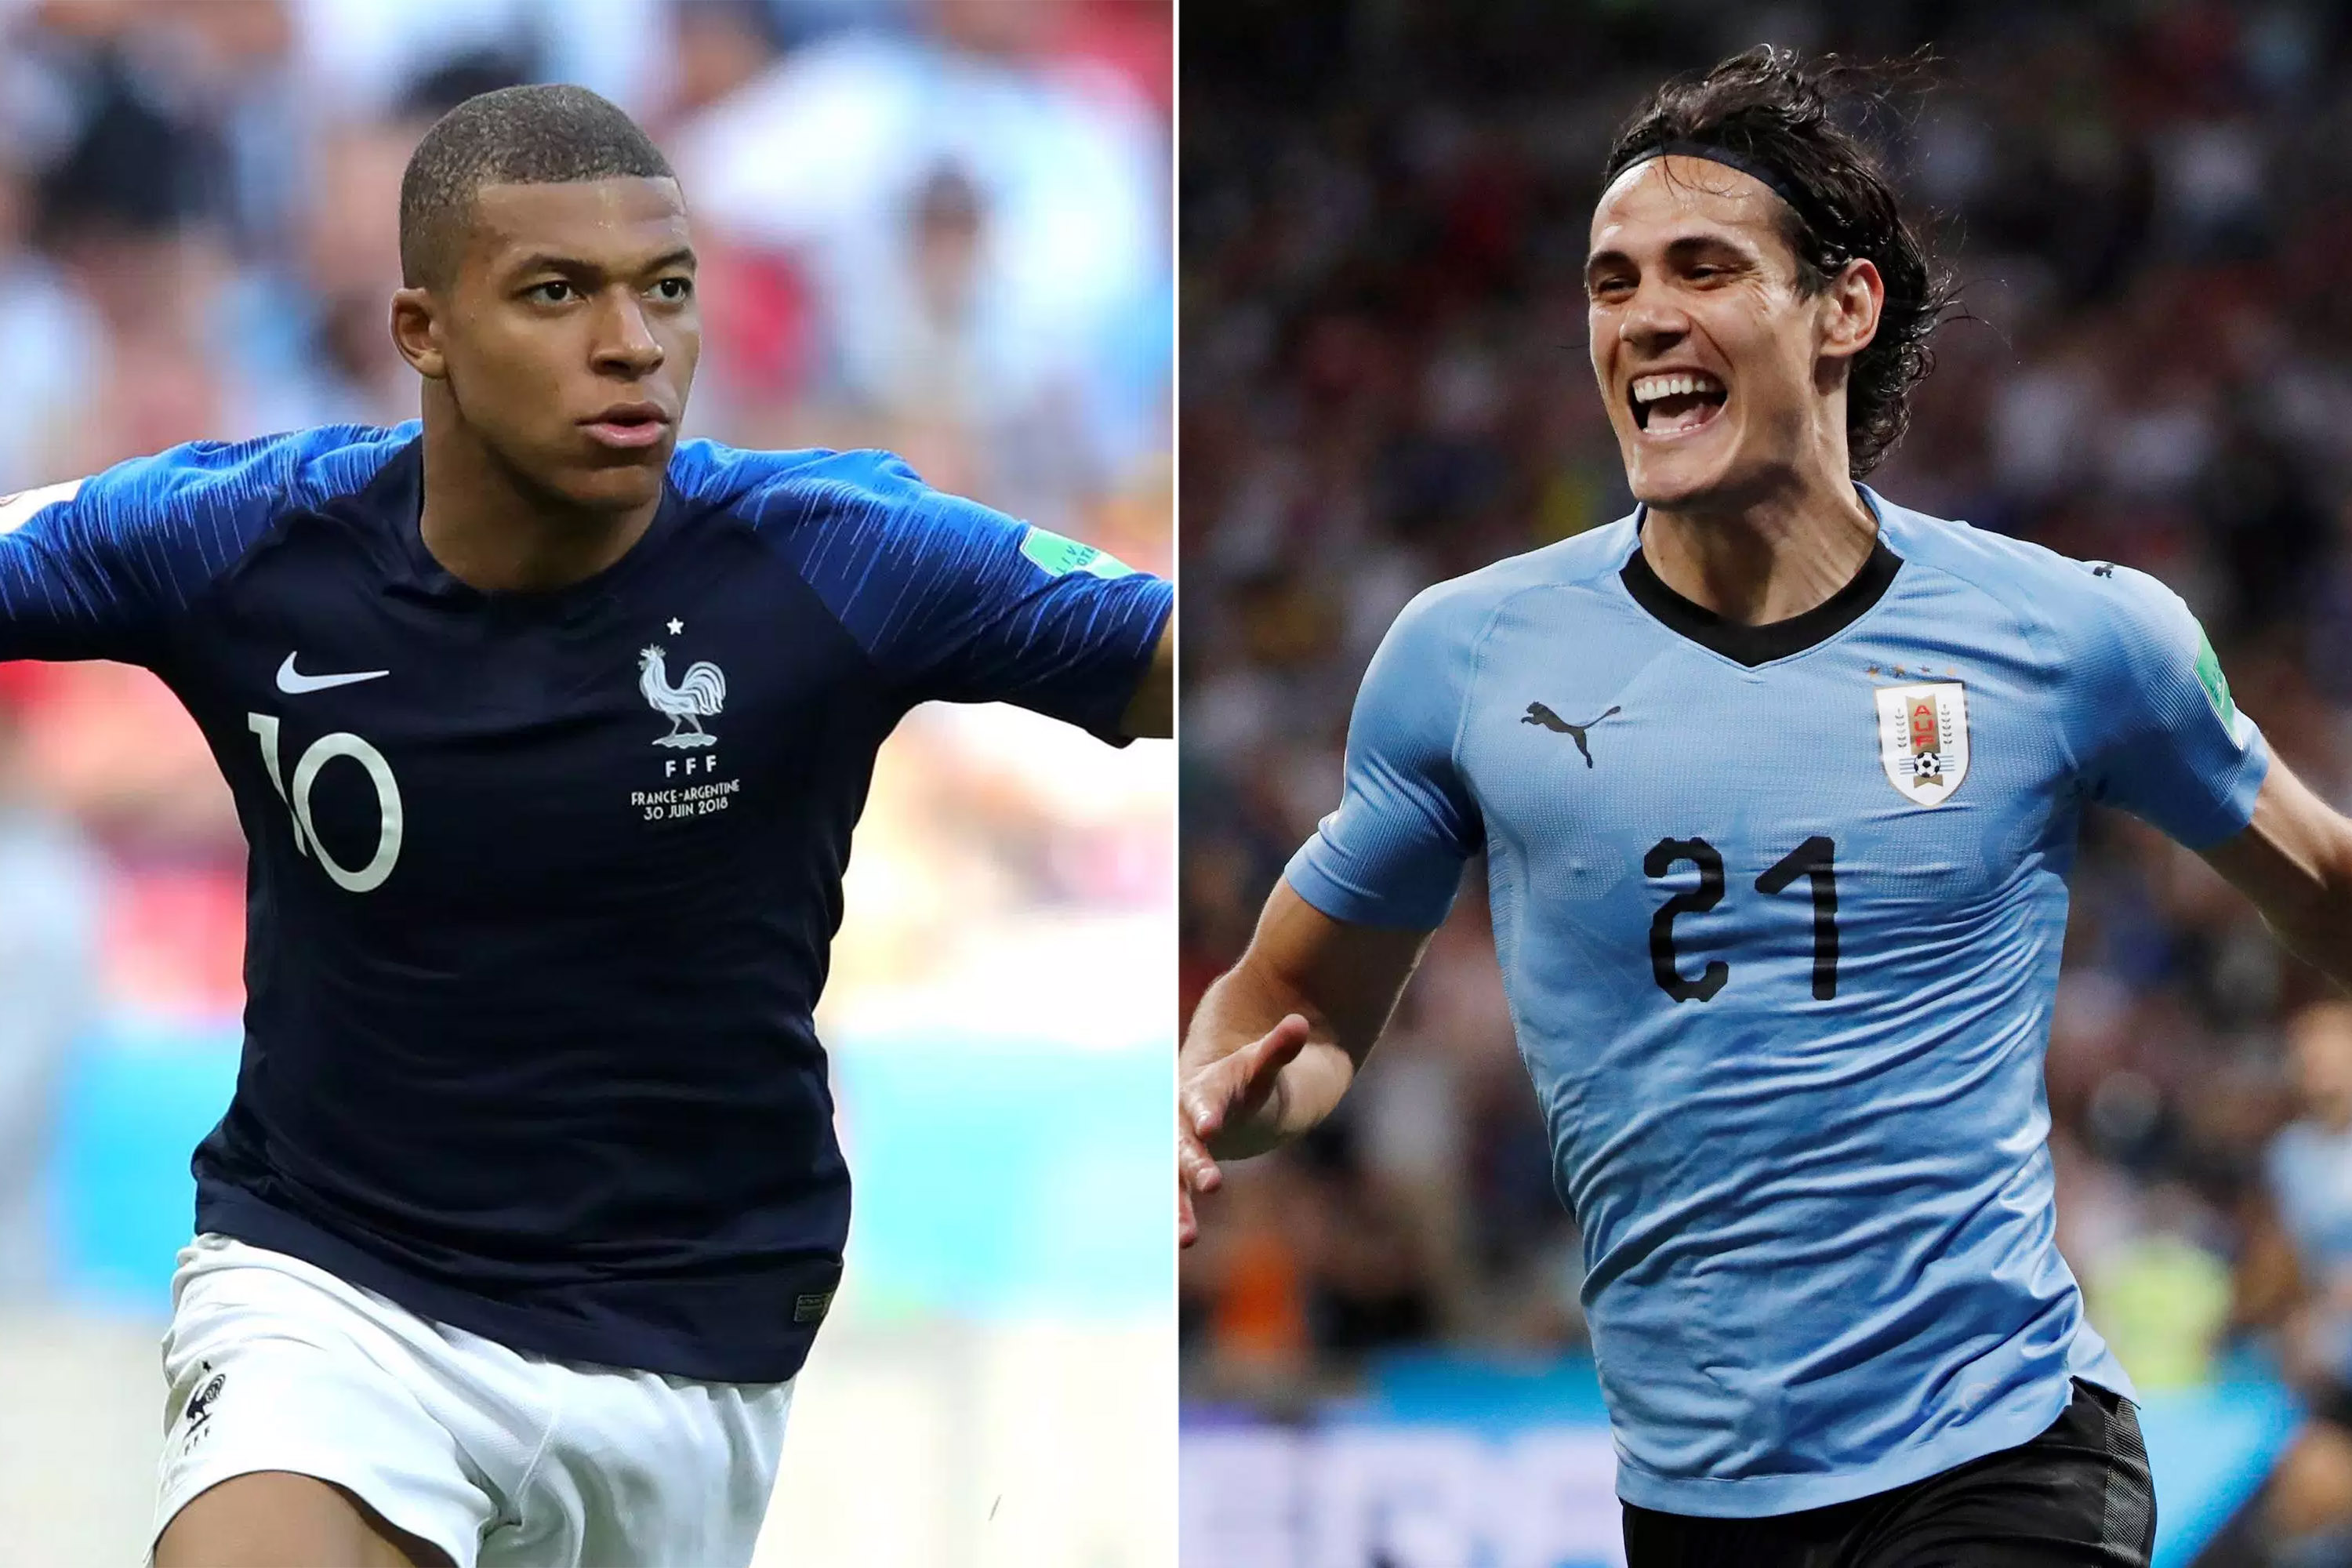 Saiba como assistir a França x Uruguai pela Copa do Mundo 2018